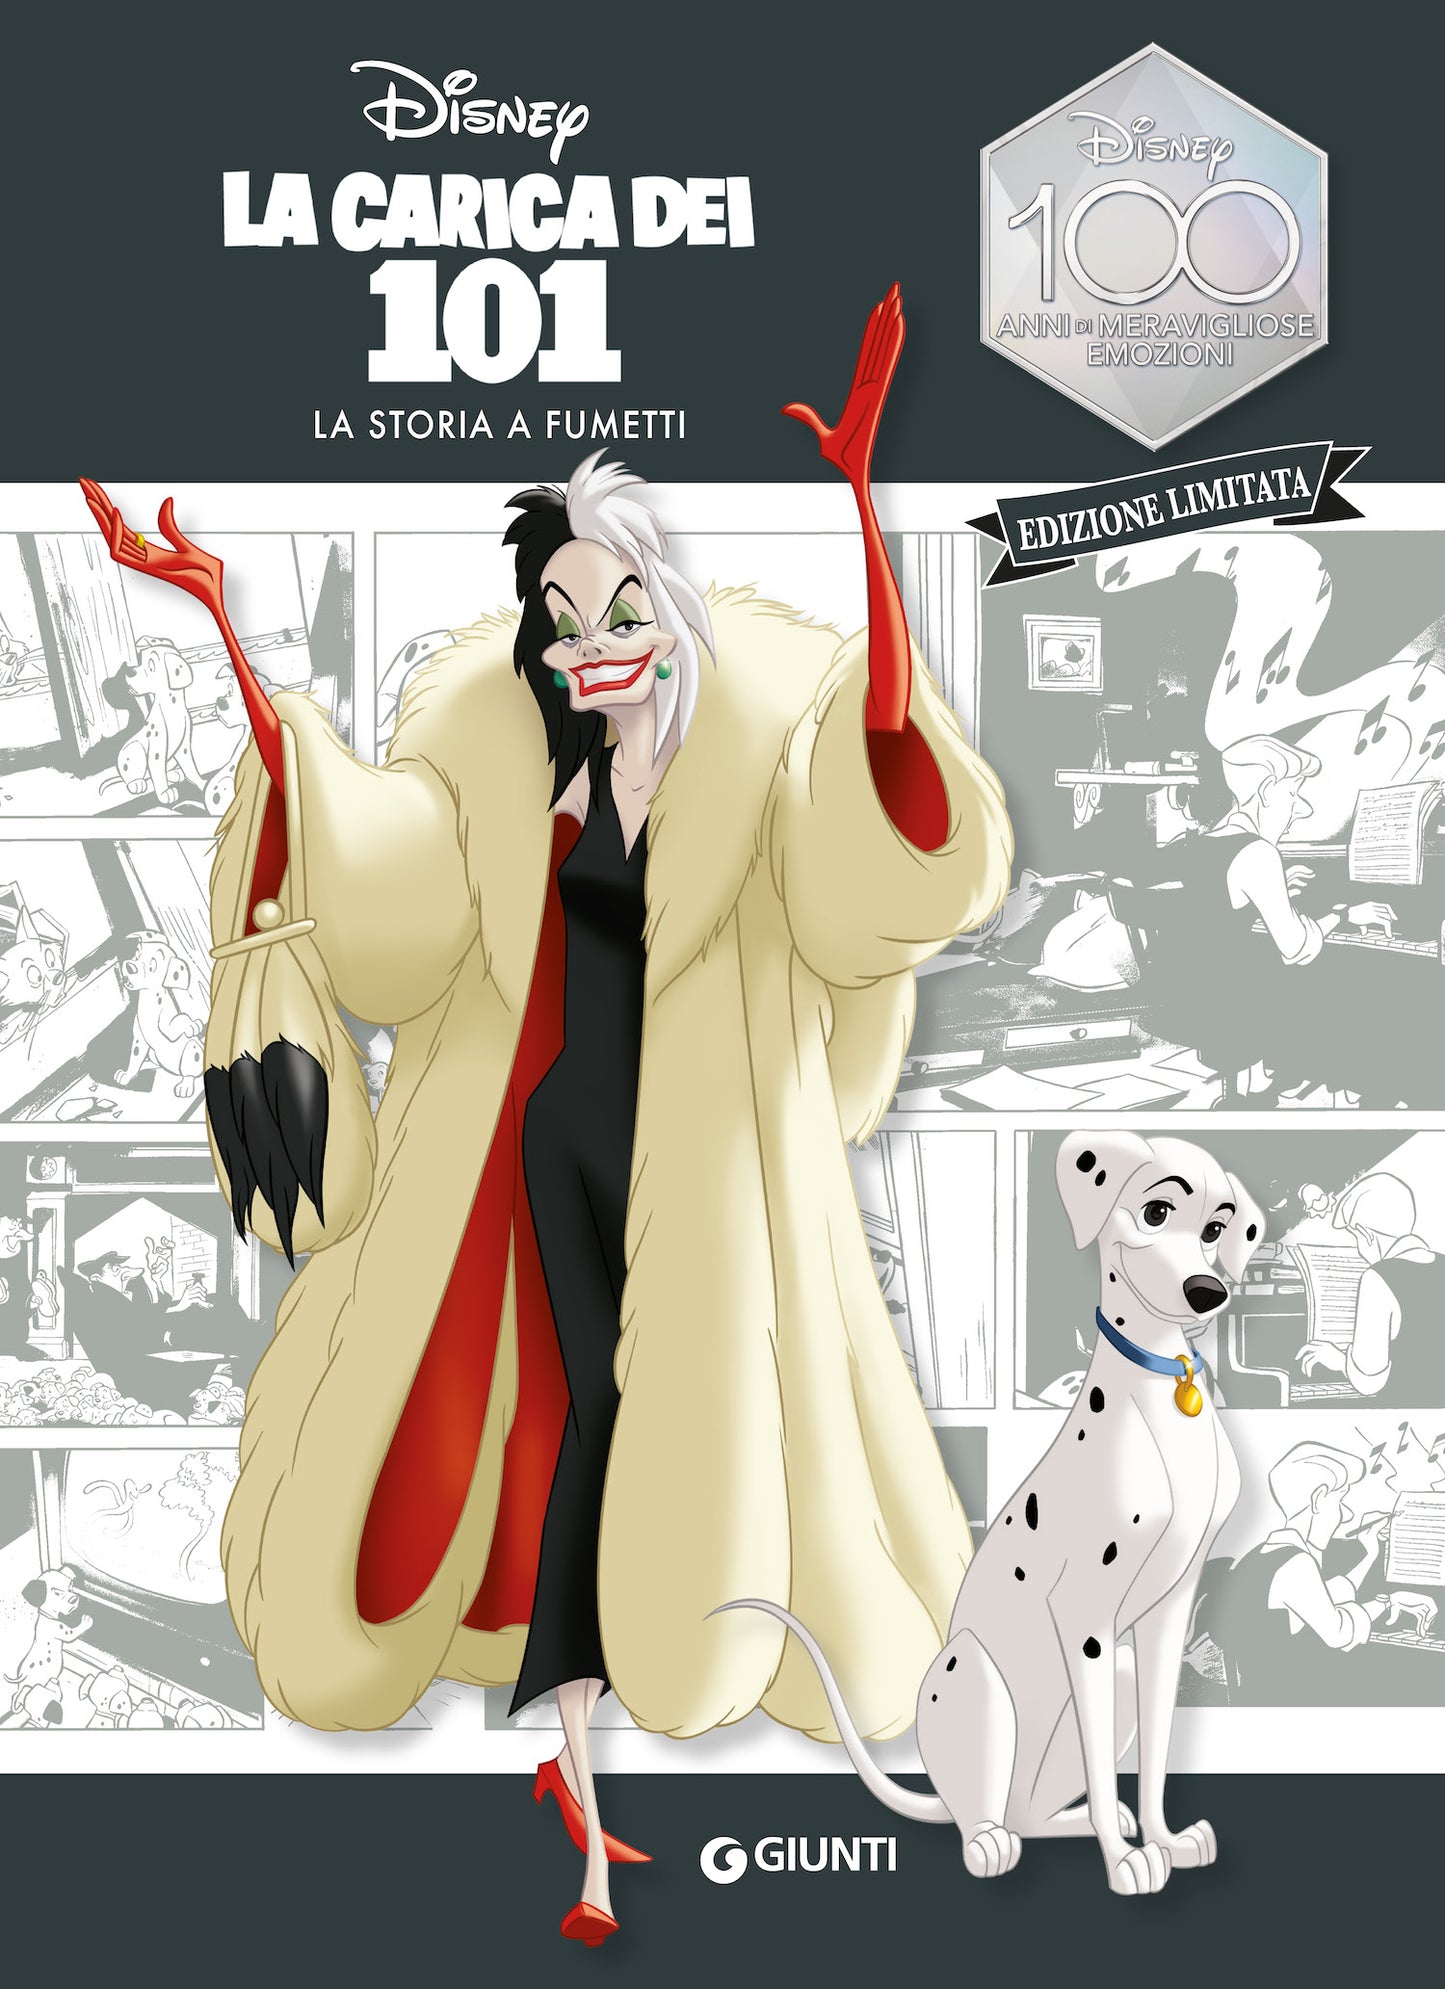 La Carica dei 101 La storia a fumetti Edizione limitata::Disney 100 Anni di meravigliose emozioni